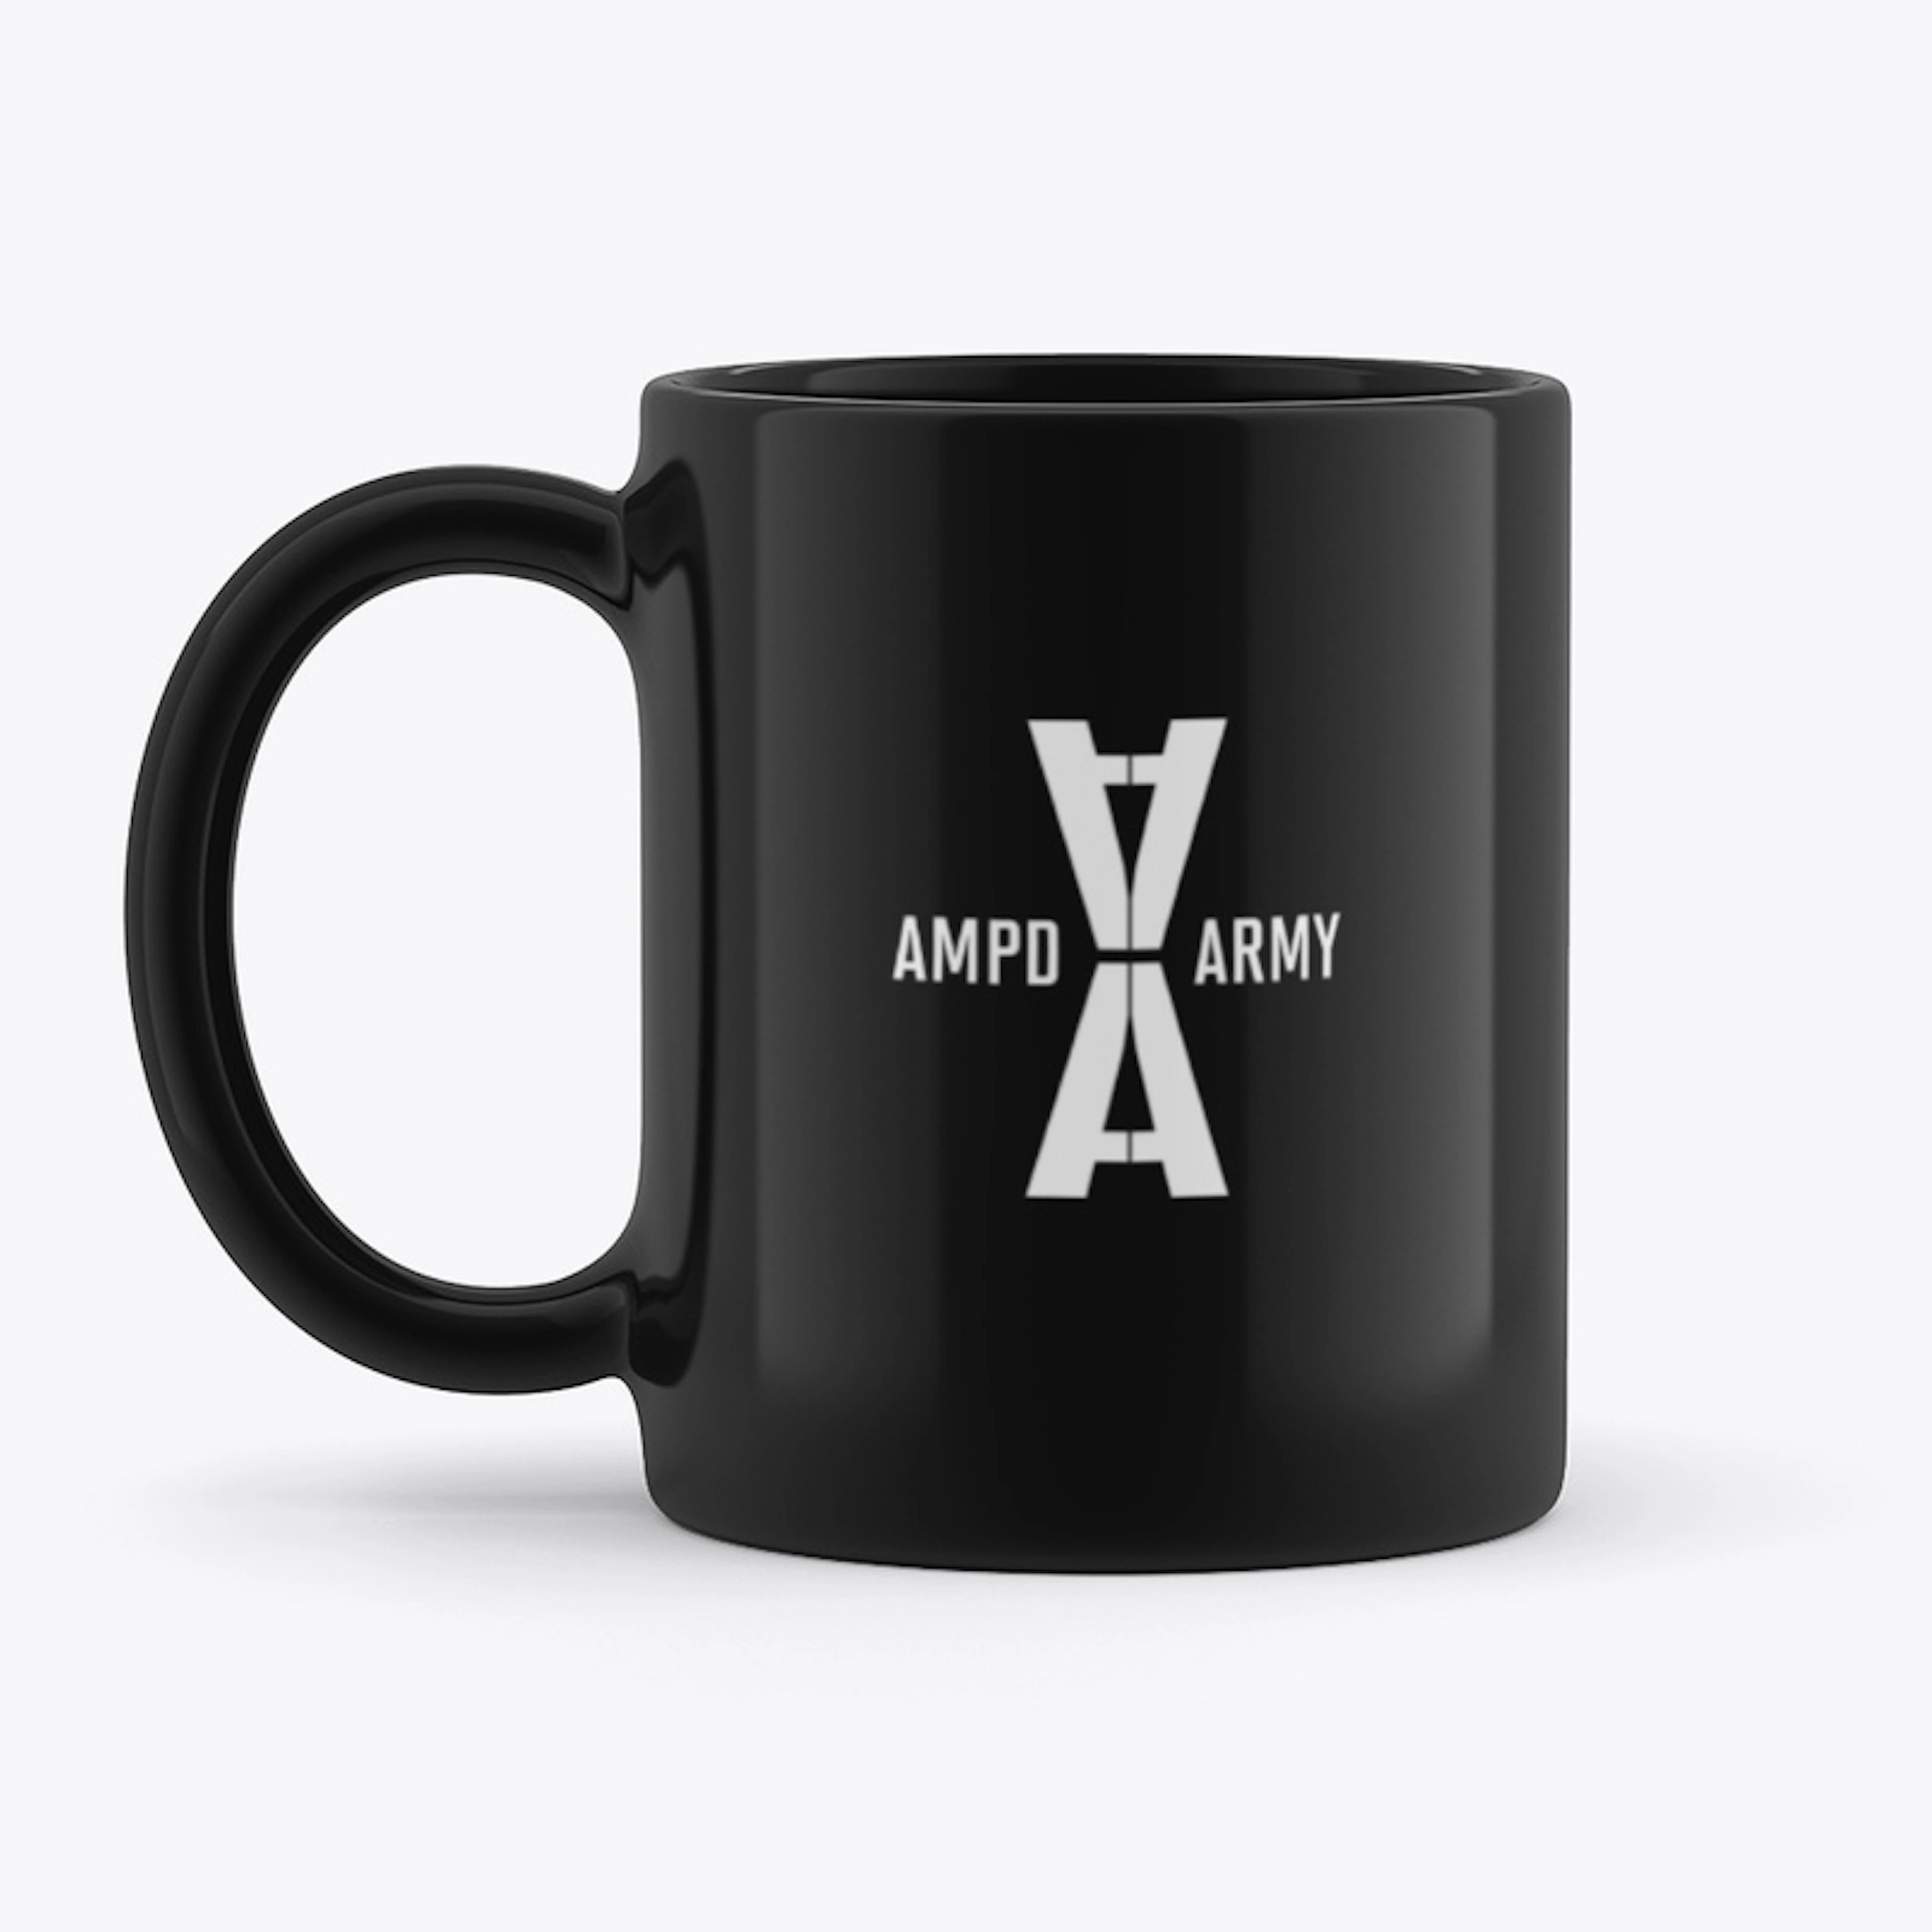 AMPD ARMY PREVAIL CERAMIC MUG